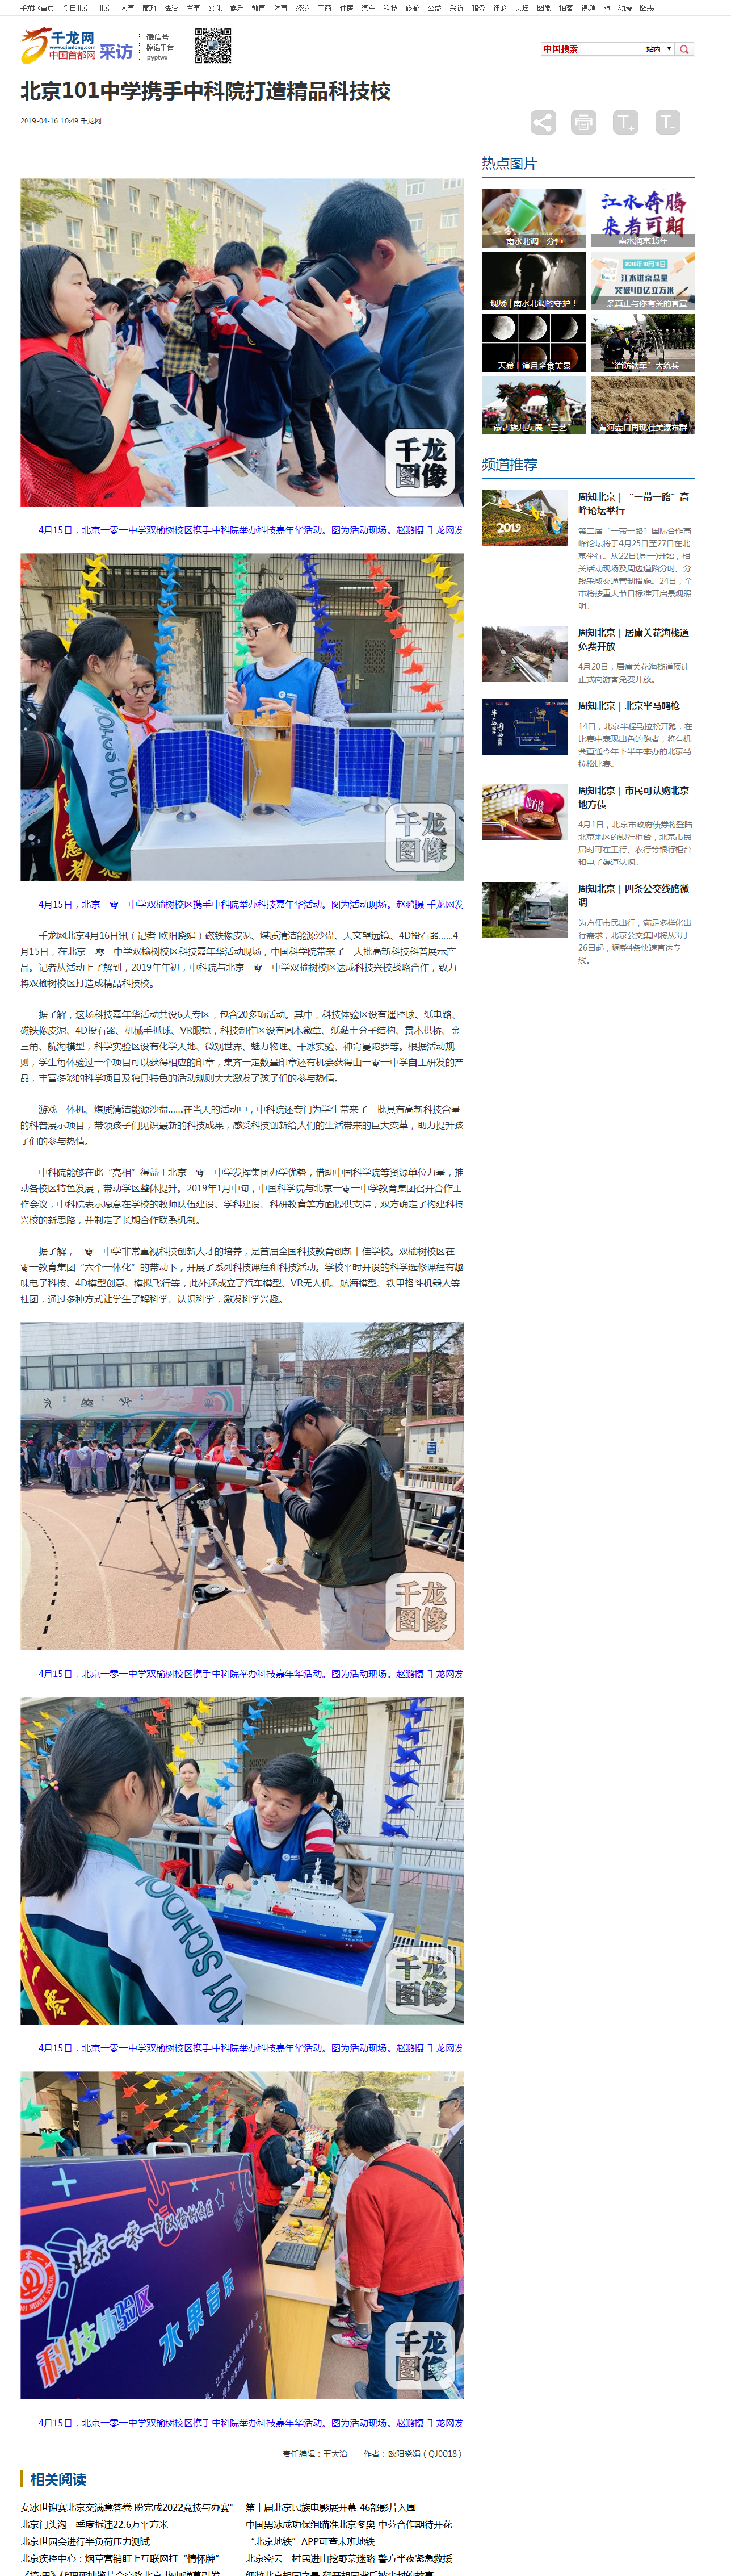 北京101中学携手中科院打造精品科技校-千龙网·中国首都网.png